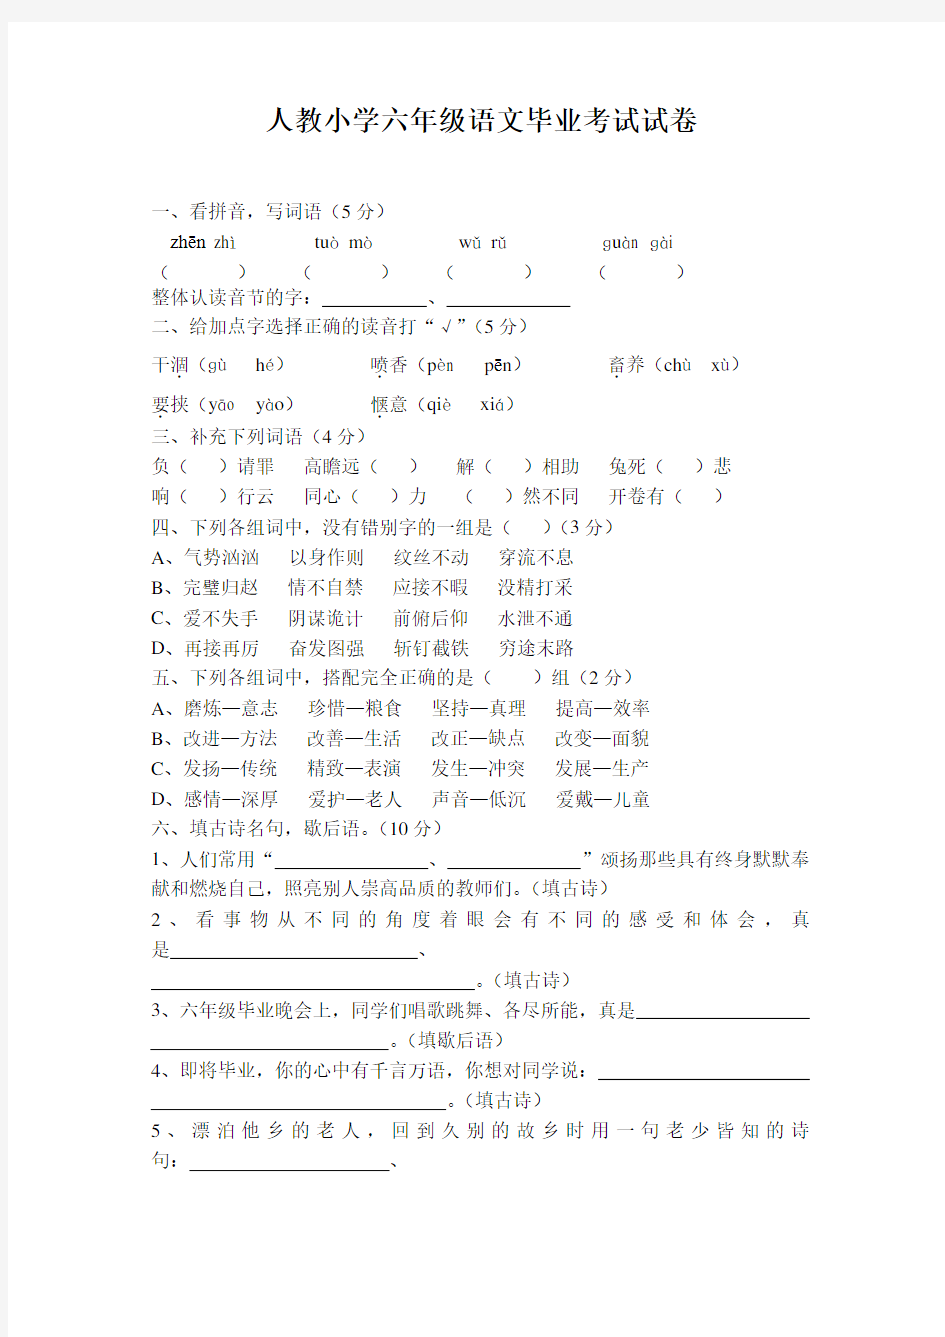 上海市小学六年级语文毕业考试试卷及答案